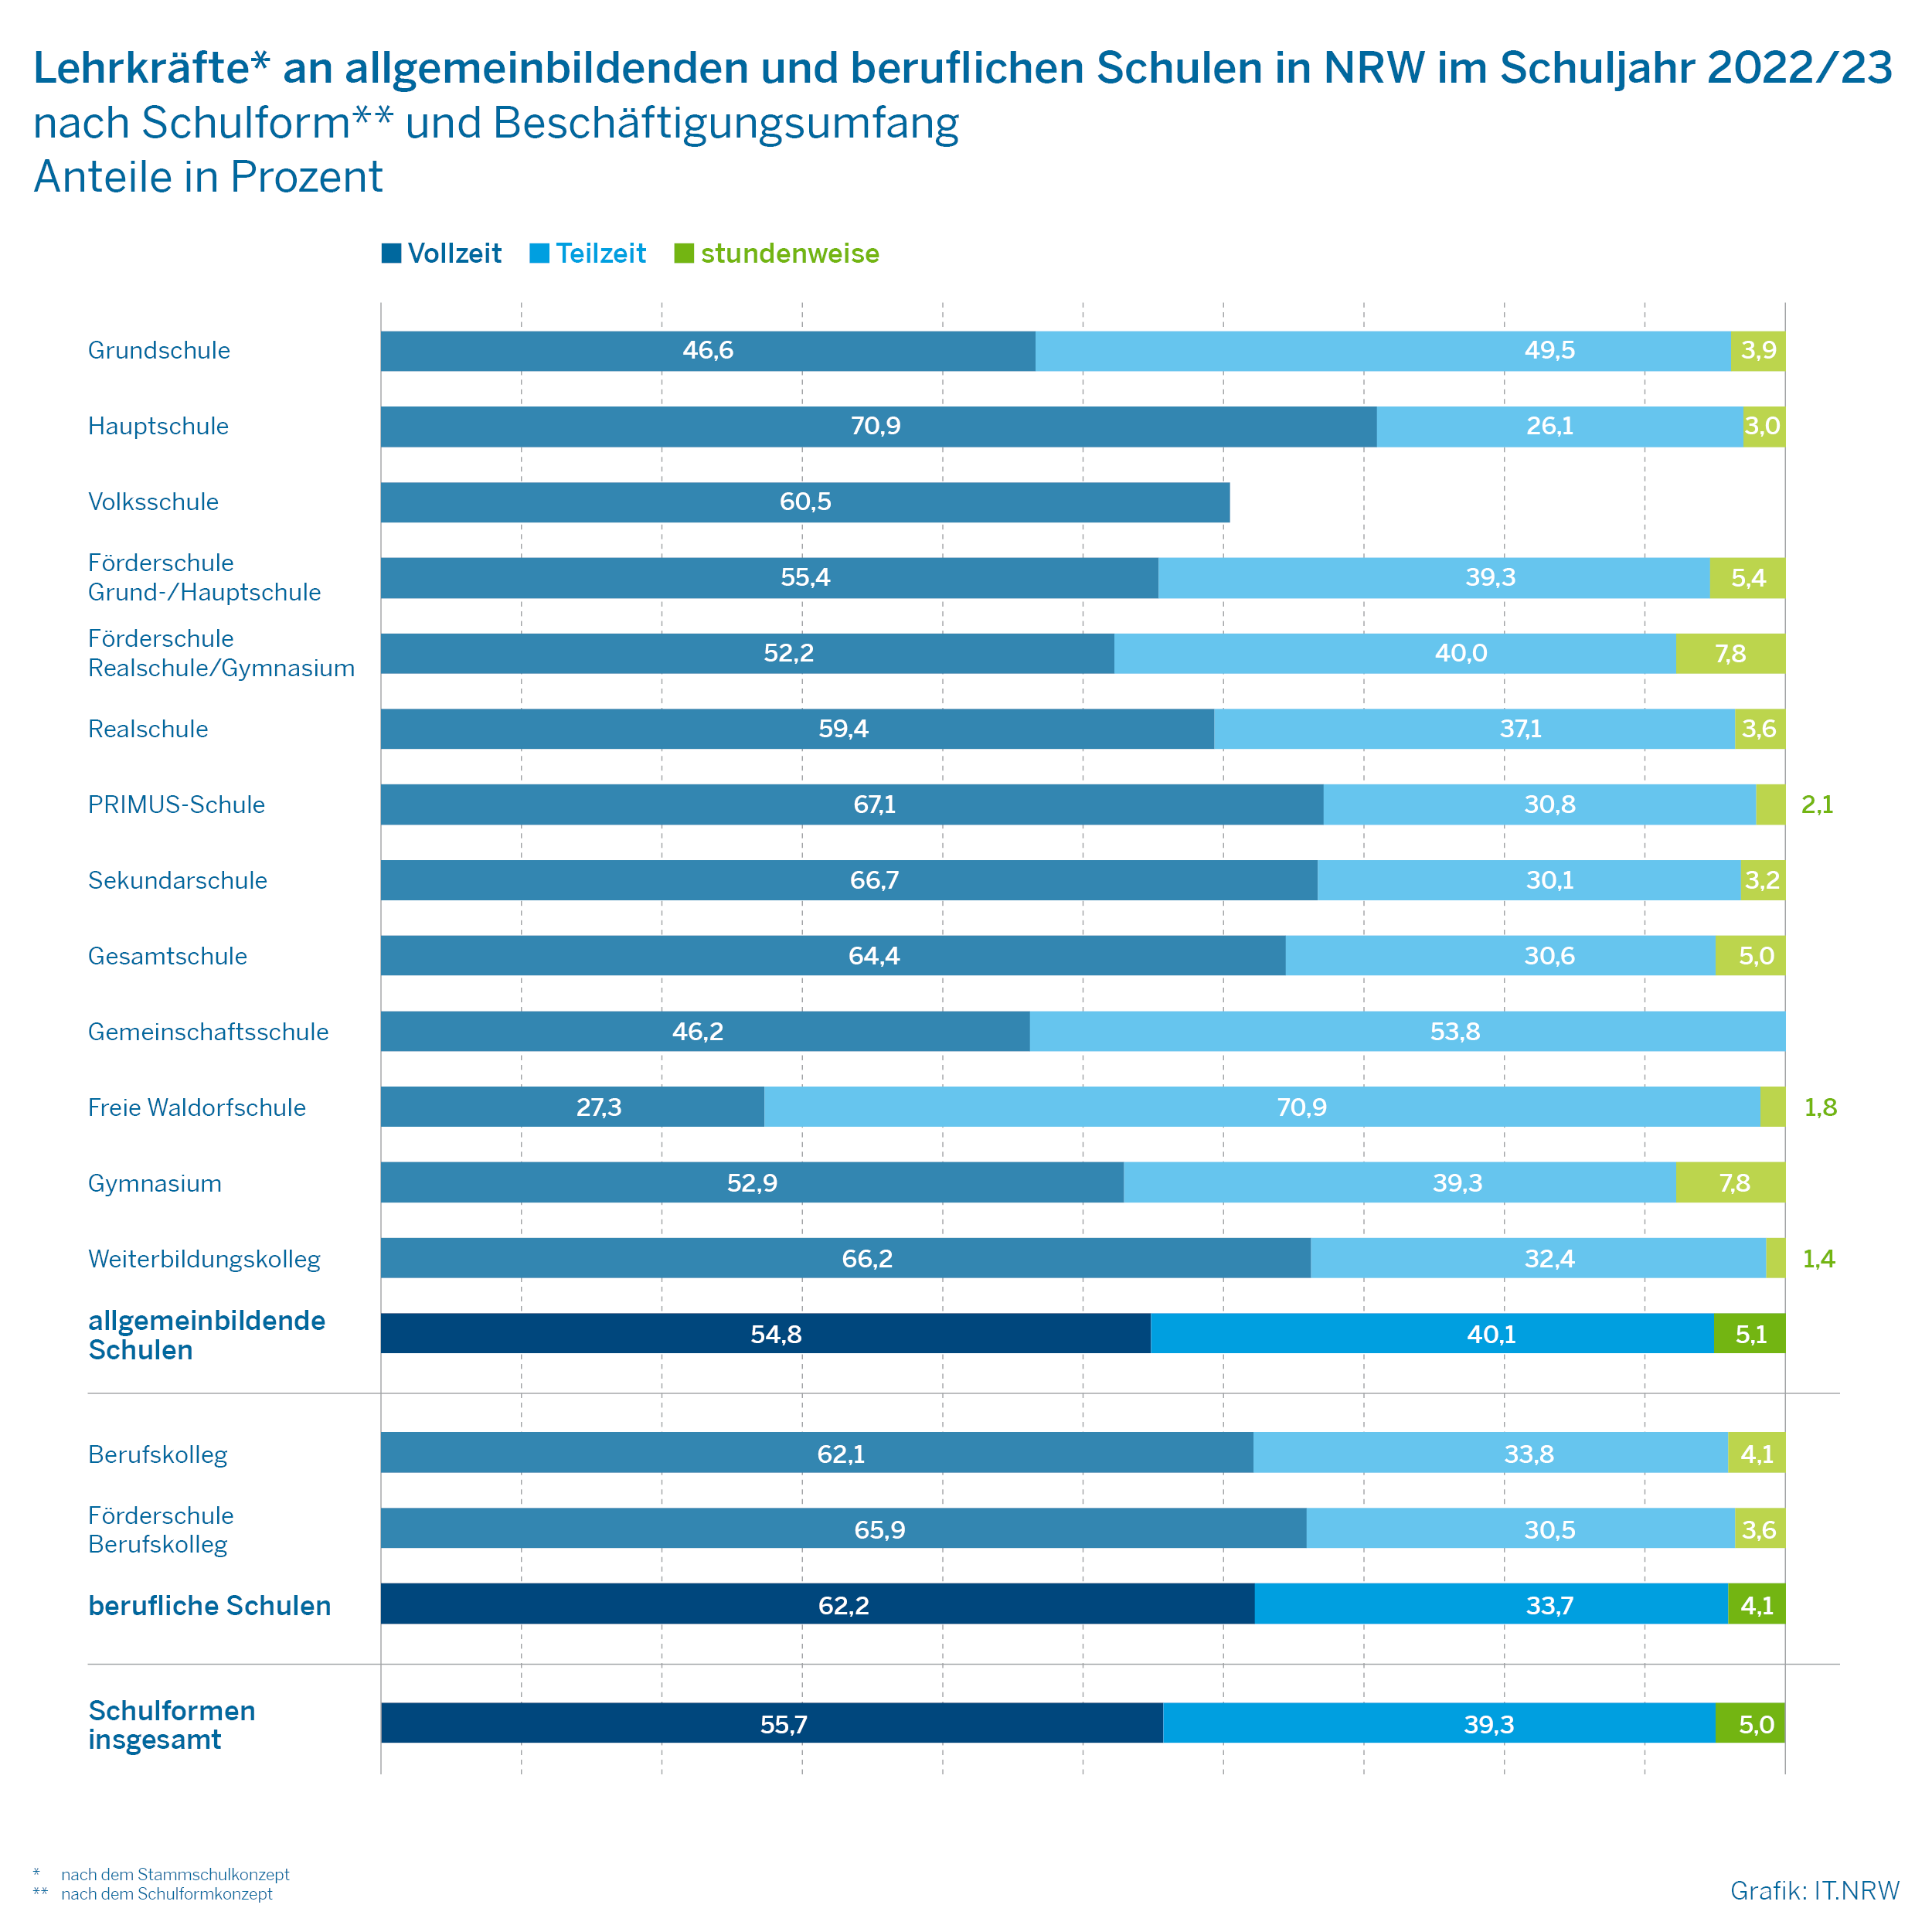 Lehrkräfte an allgemeinbildenden und beruflichen Schulen in NRW im Schuljahr 2022/23